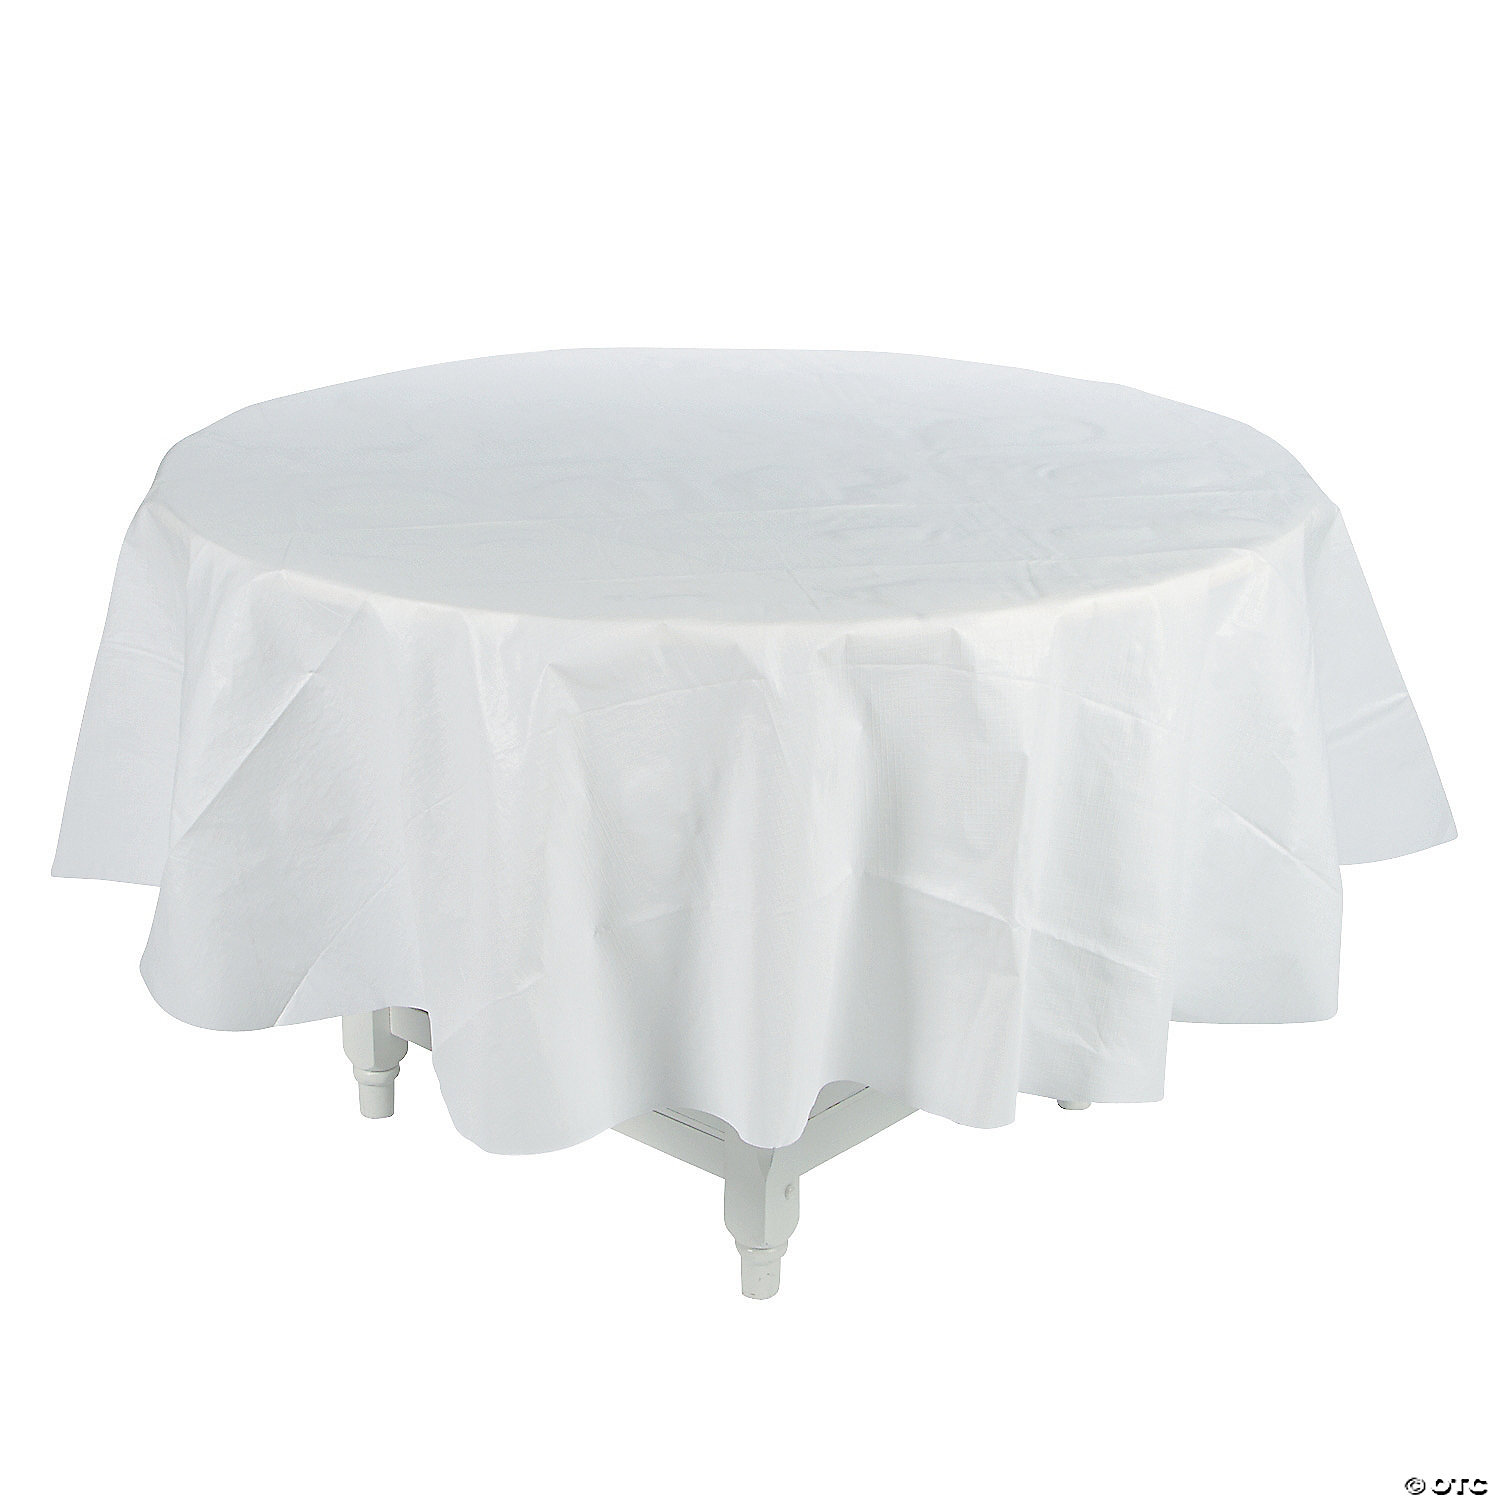 white round tablecloths amazon